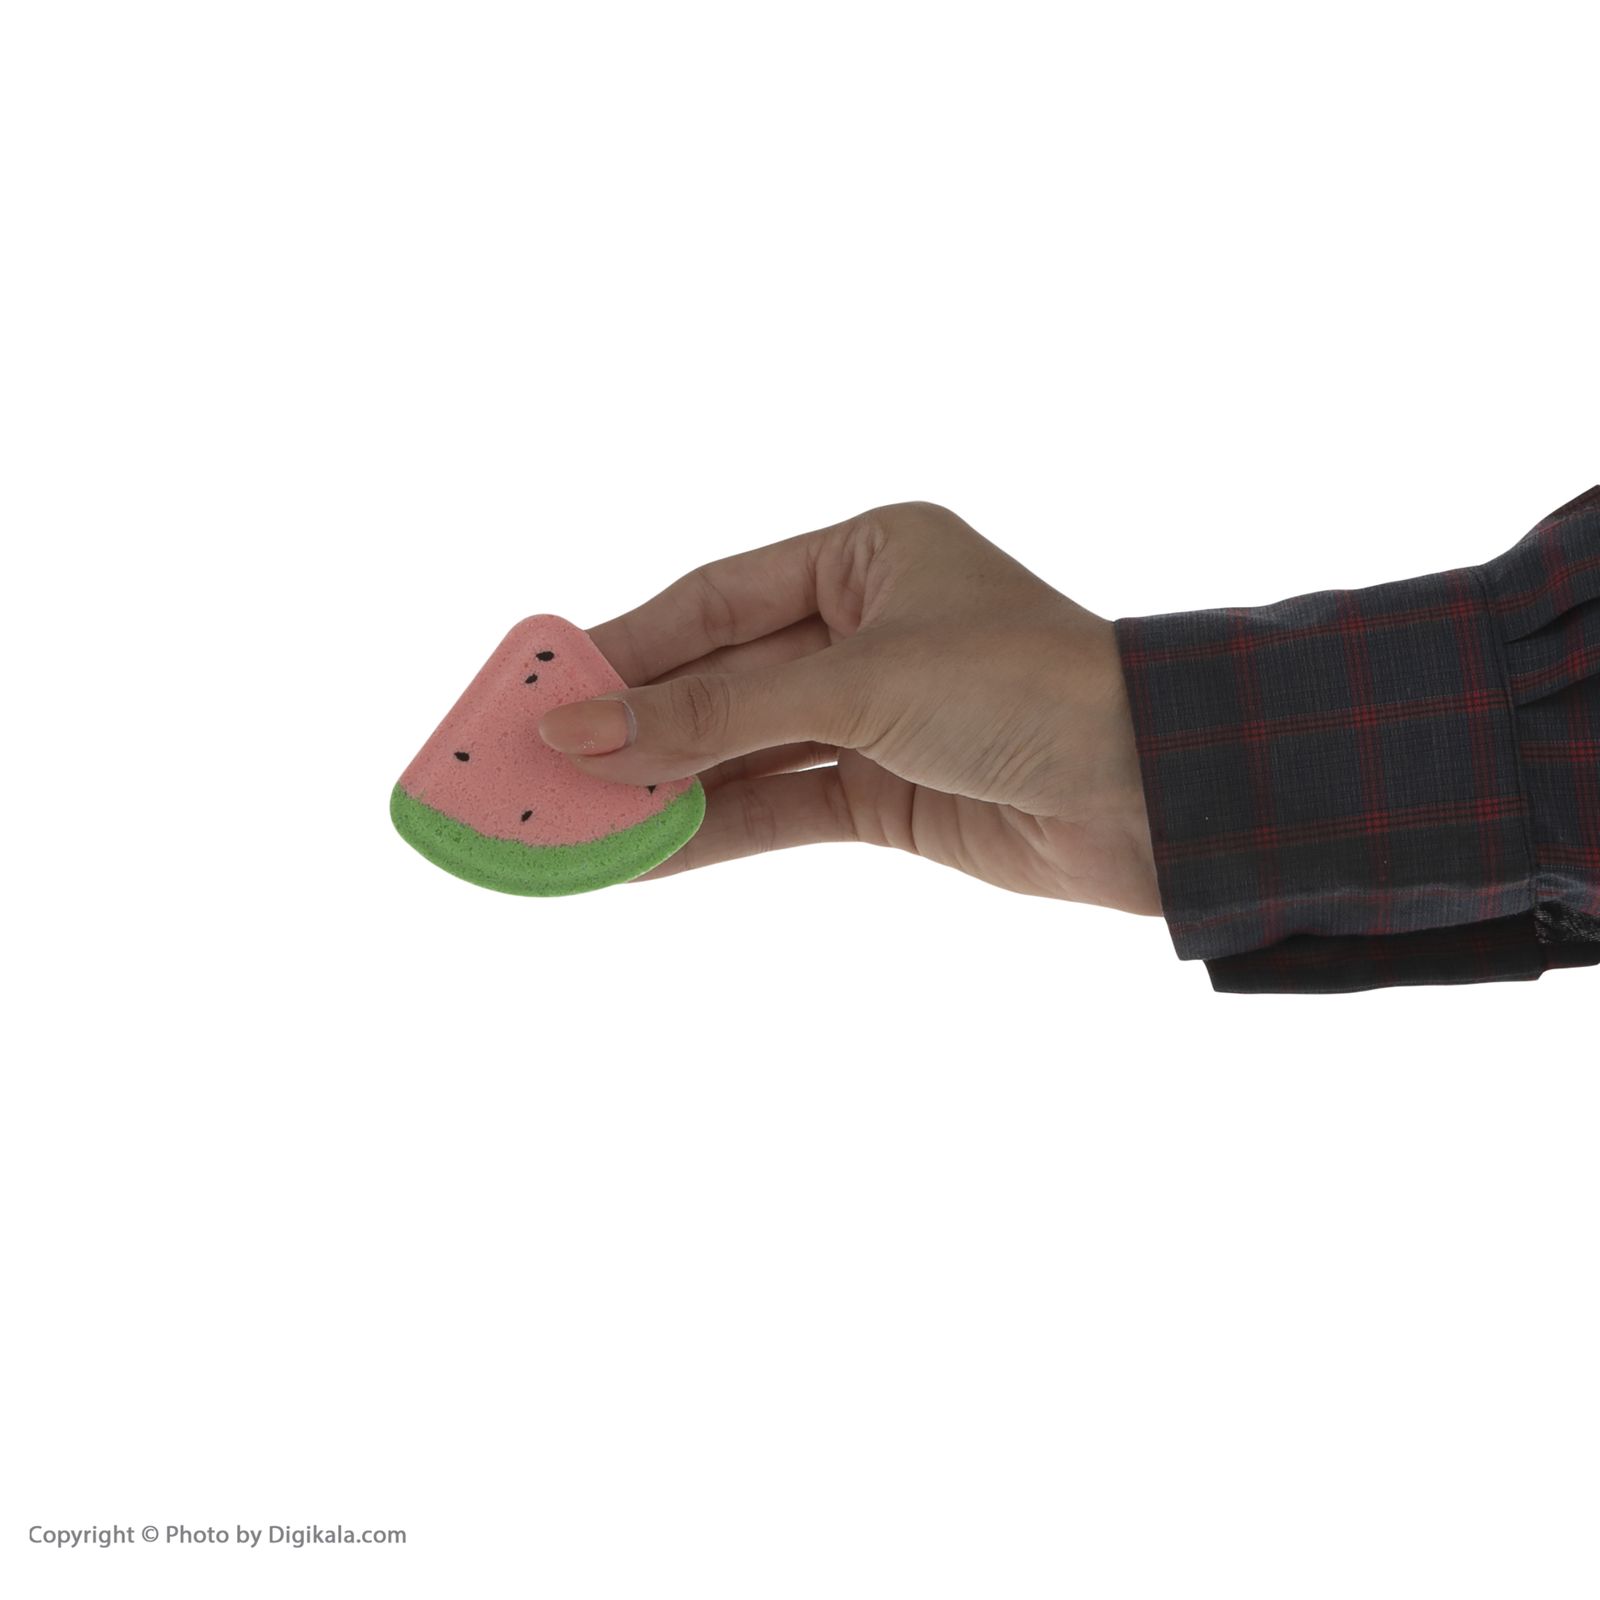 کوکتل پدیکور ژبن پلاس مدل Watermelon وزن 480 گرم بسته 8 عددی -  - 7